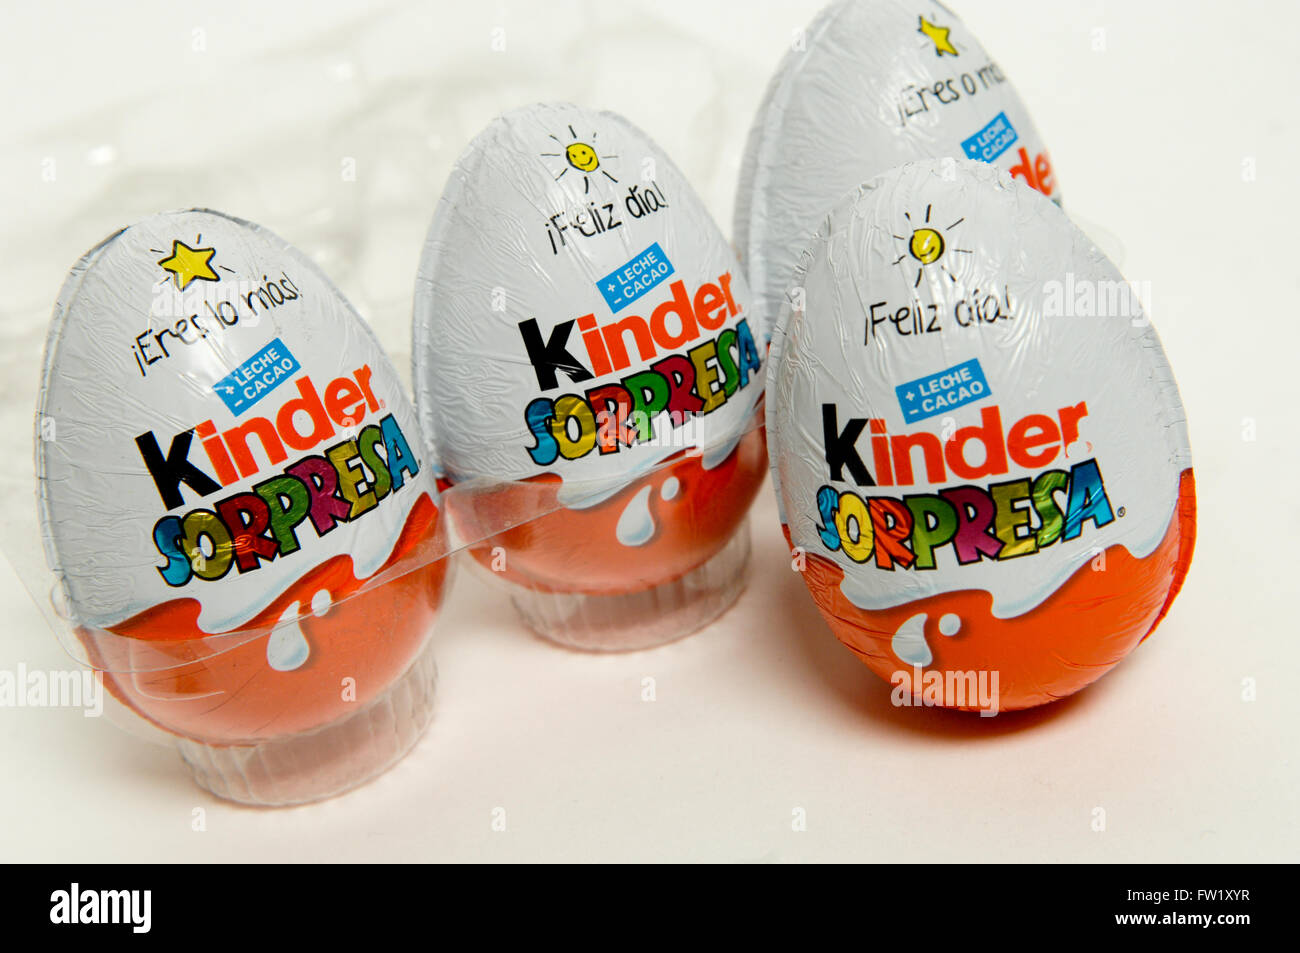 Kinder sorpresa, noto anche come un Uovo Kinder fabbricati dalla società italiana di Ferrero presi su sfondo bianco. Foto Stock